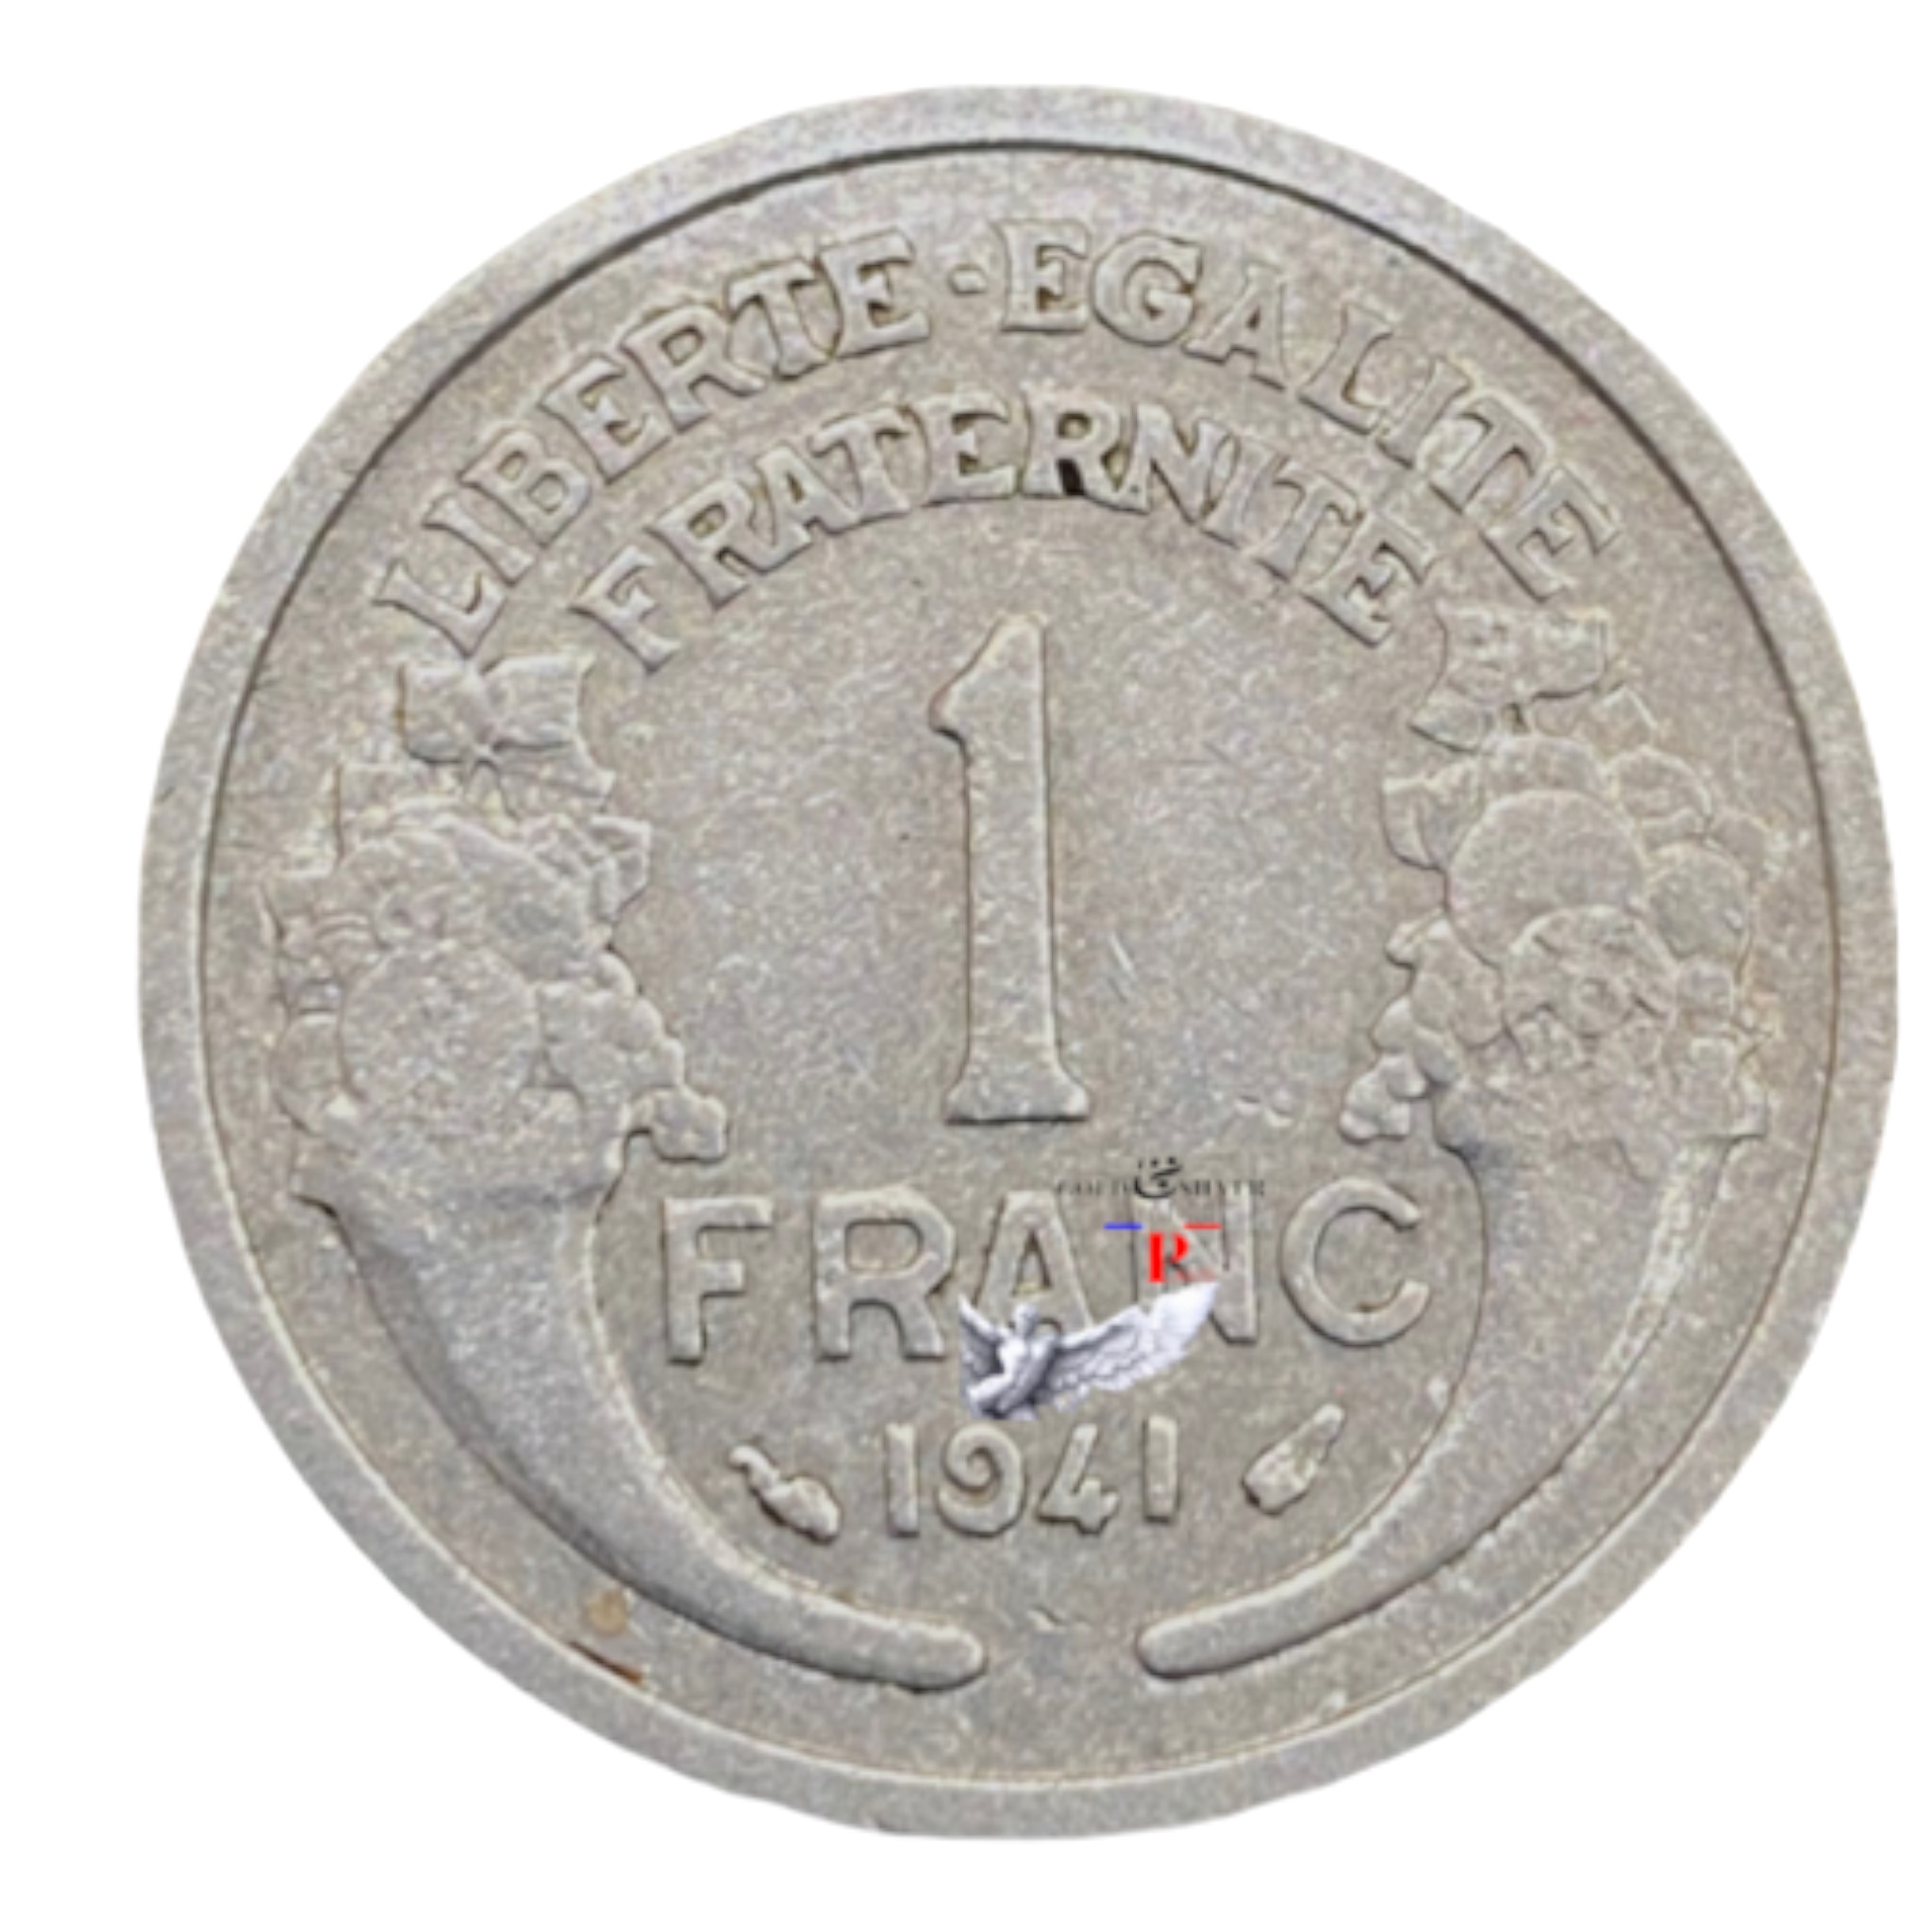 Numismatique or et argent GOLD & SILVER FRANCE PARIS